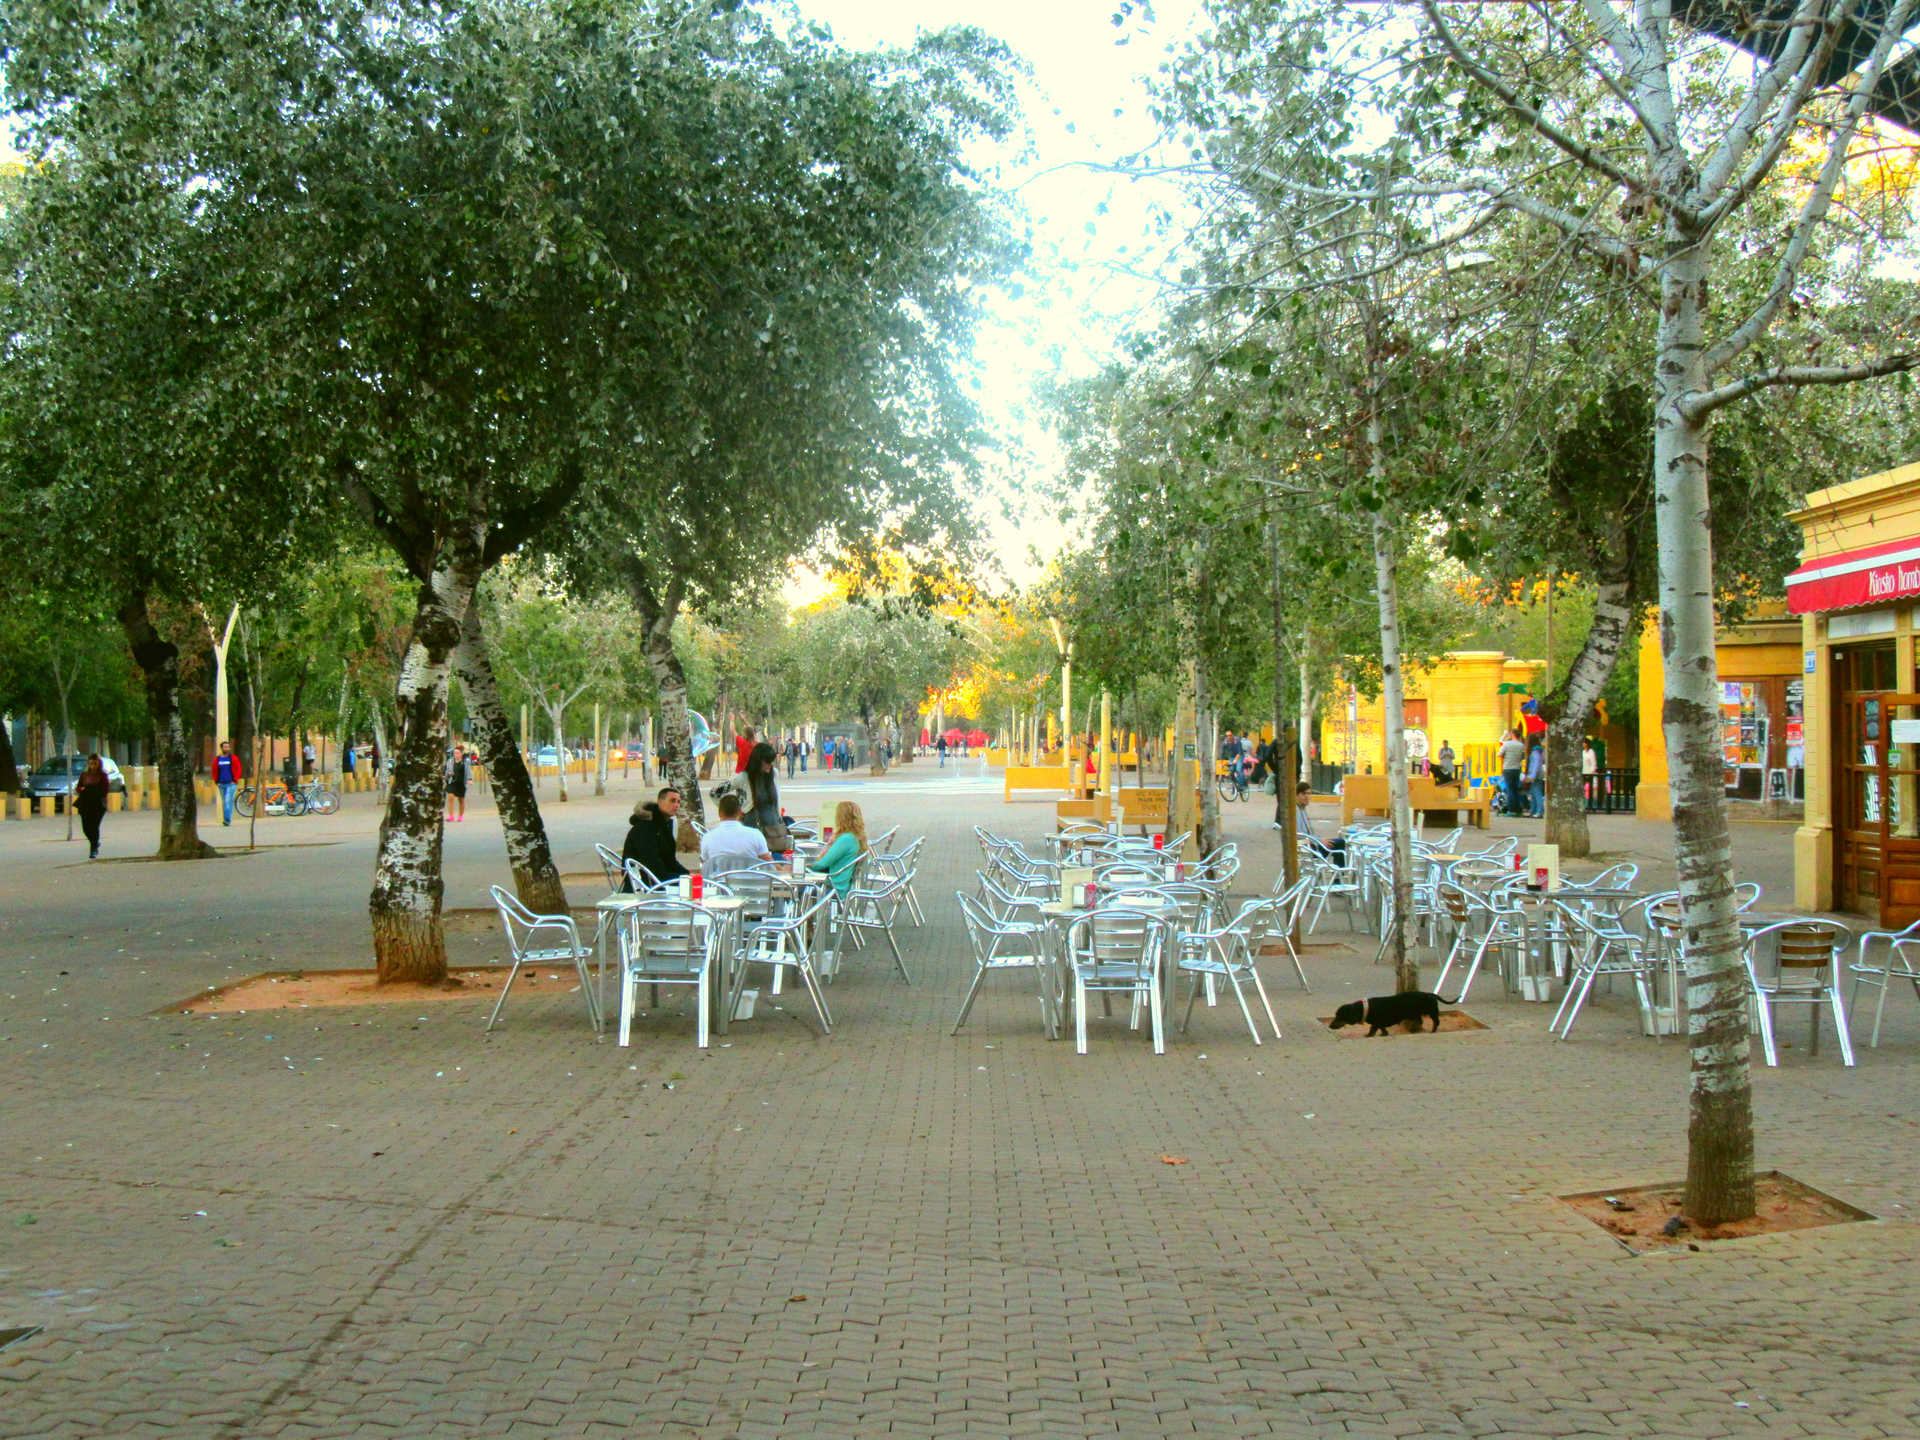 Ocio y DIversión Parque Terraza Alameda de Hercules Sevilla.jpg